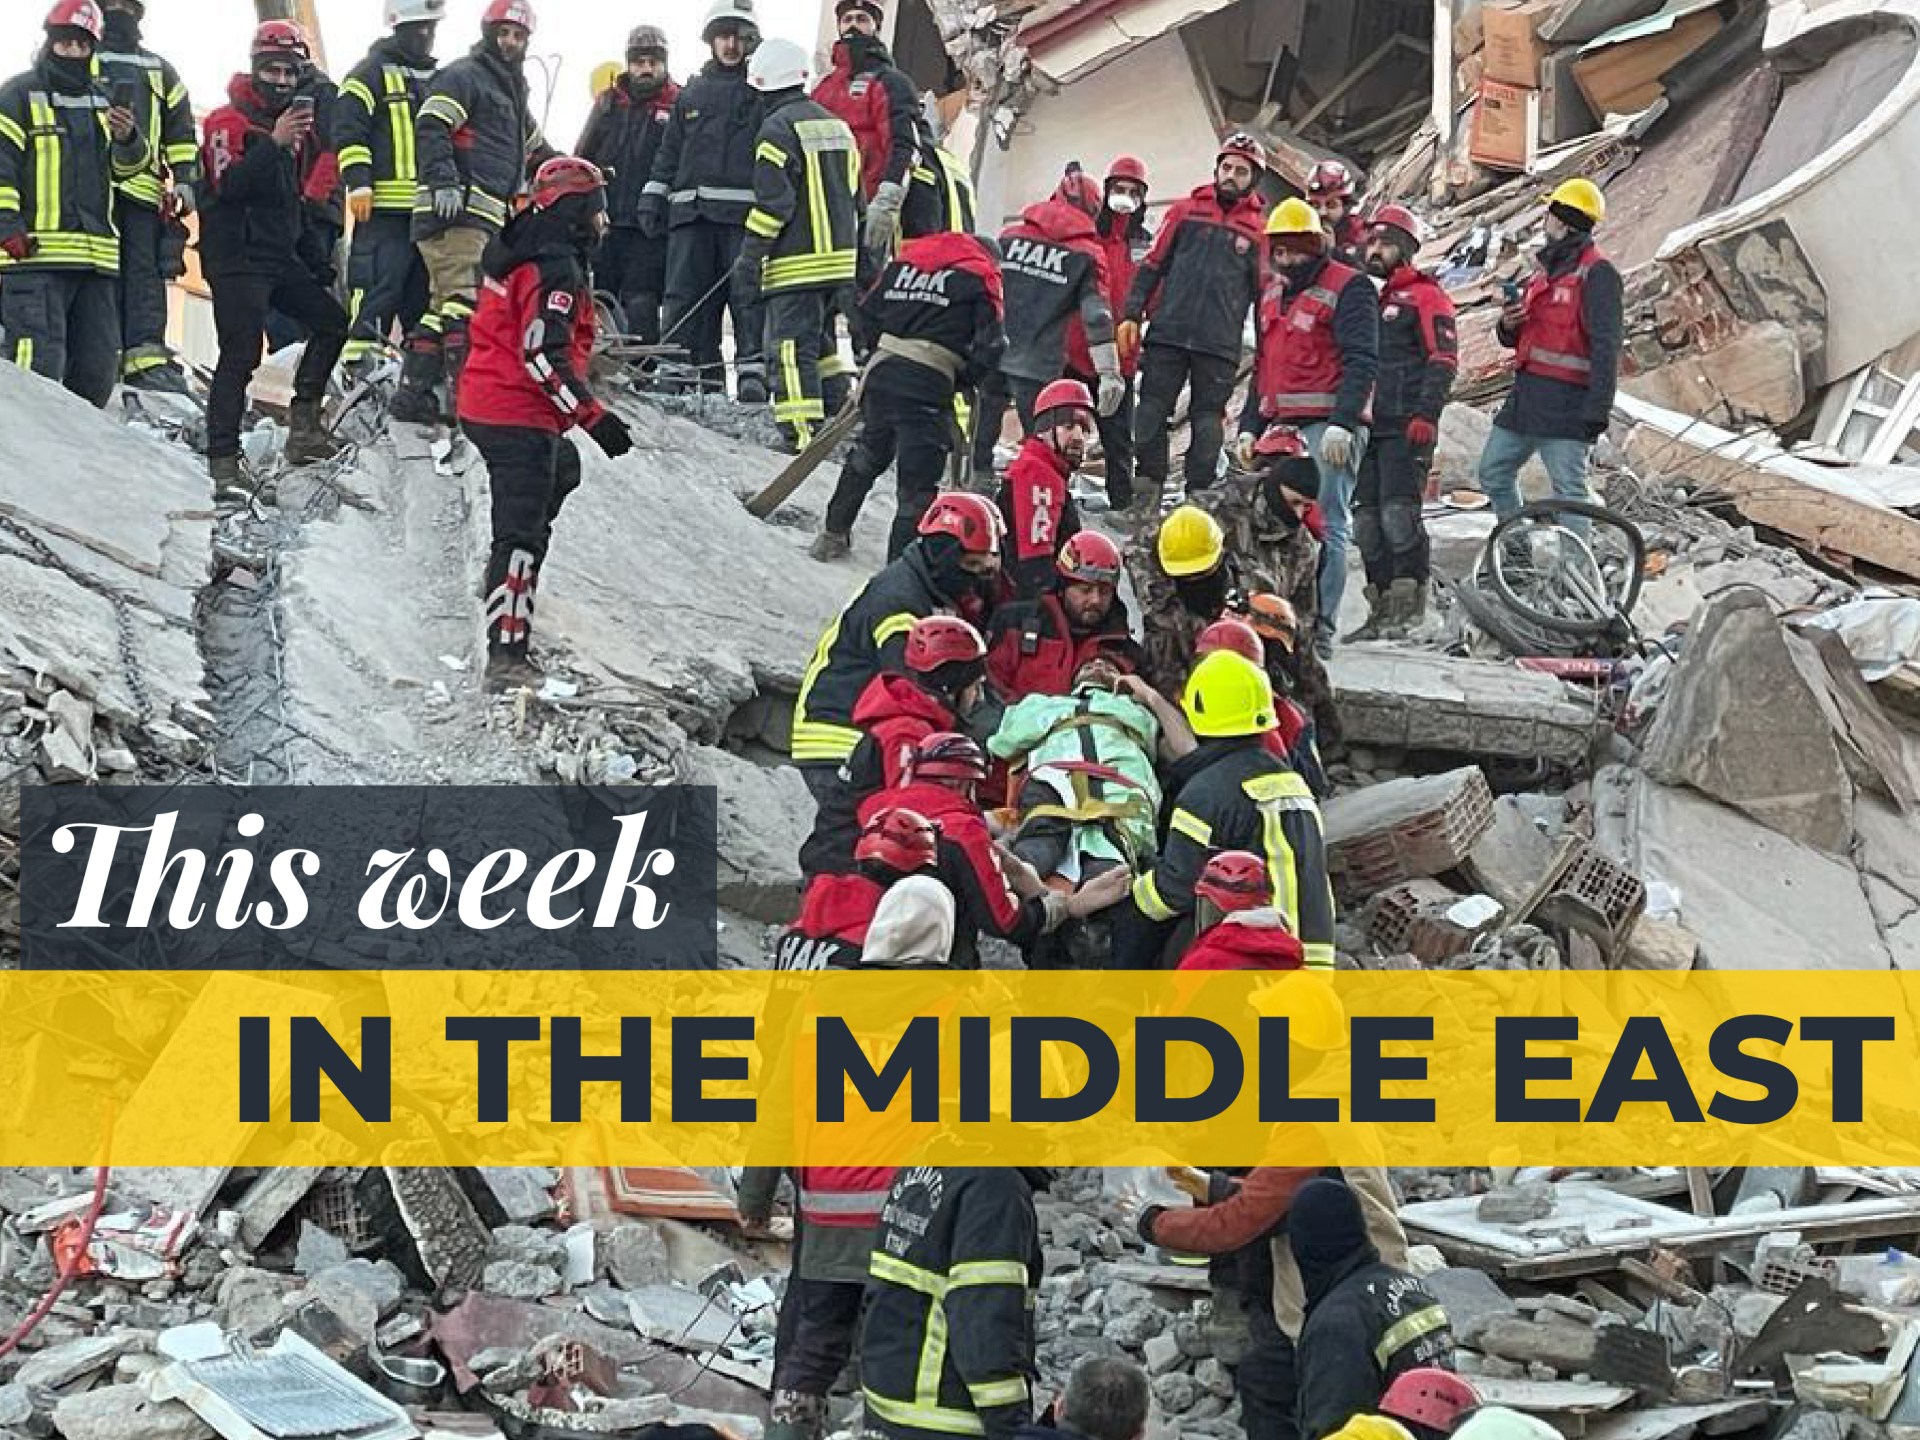 Tour d’horizon du Moyen-Orient : Tremblements de terre dévastateurs en Turquie et en Syrie |  Nouvelles sur les tremblements de terre